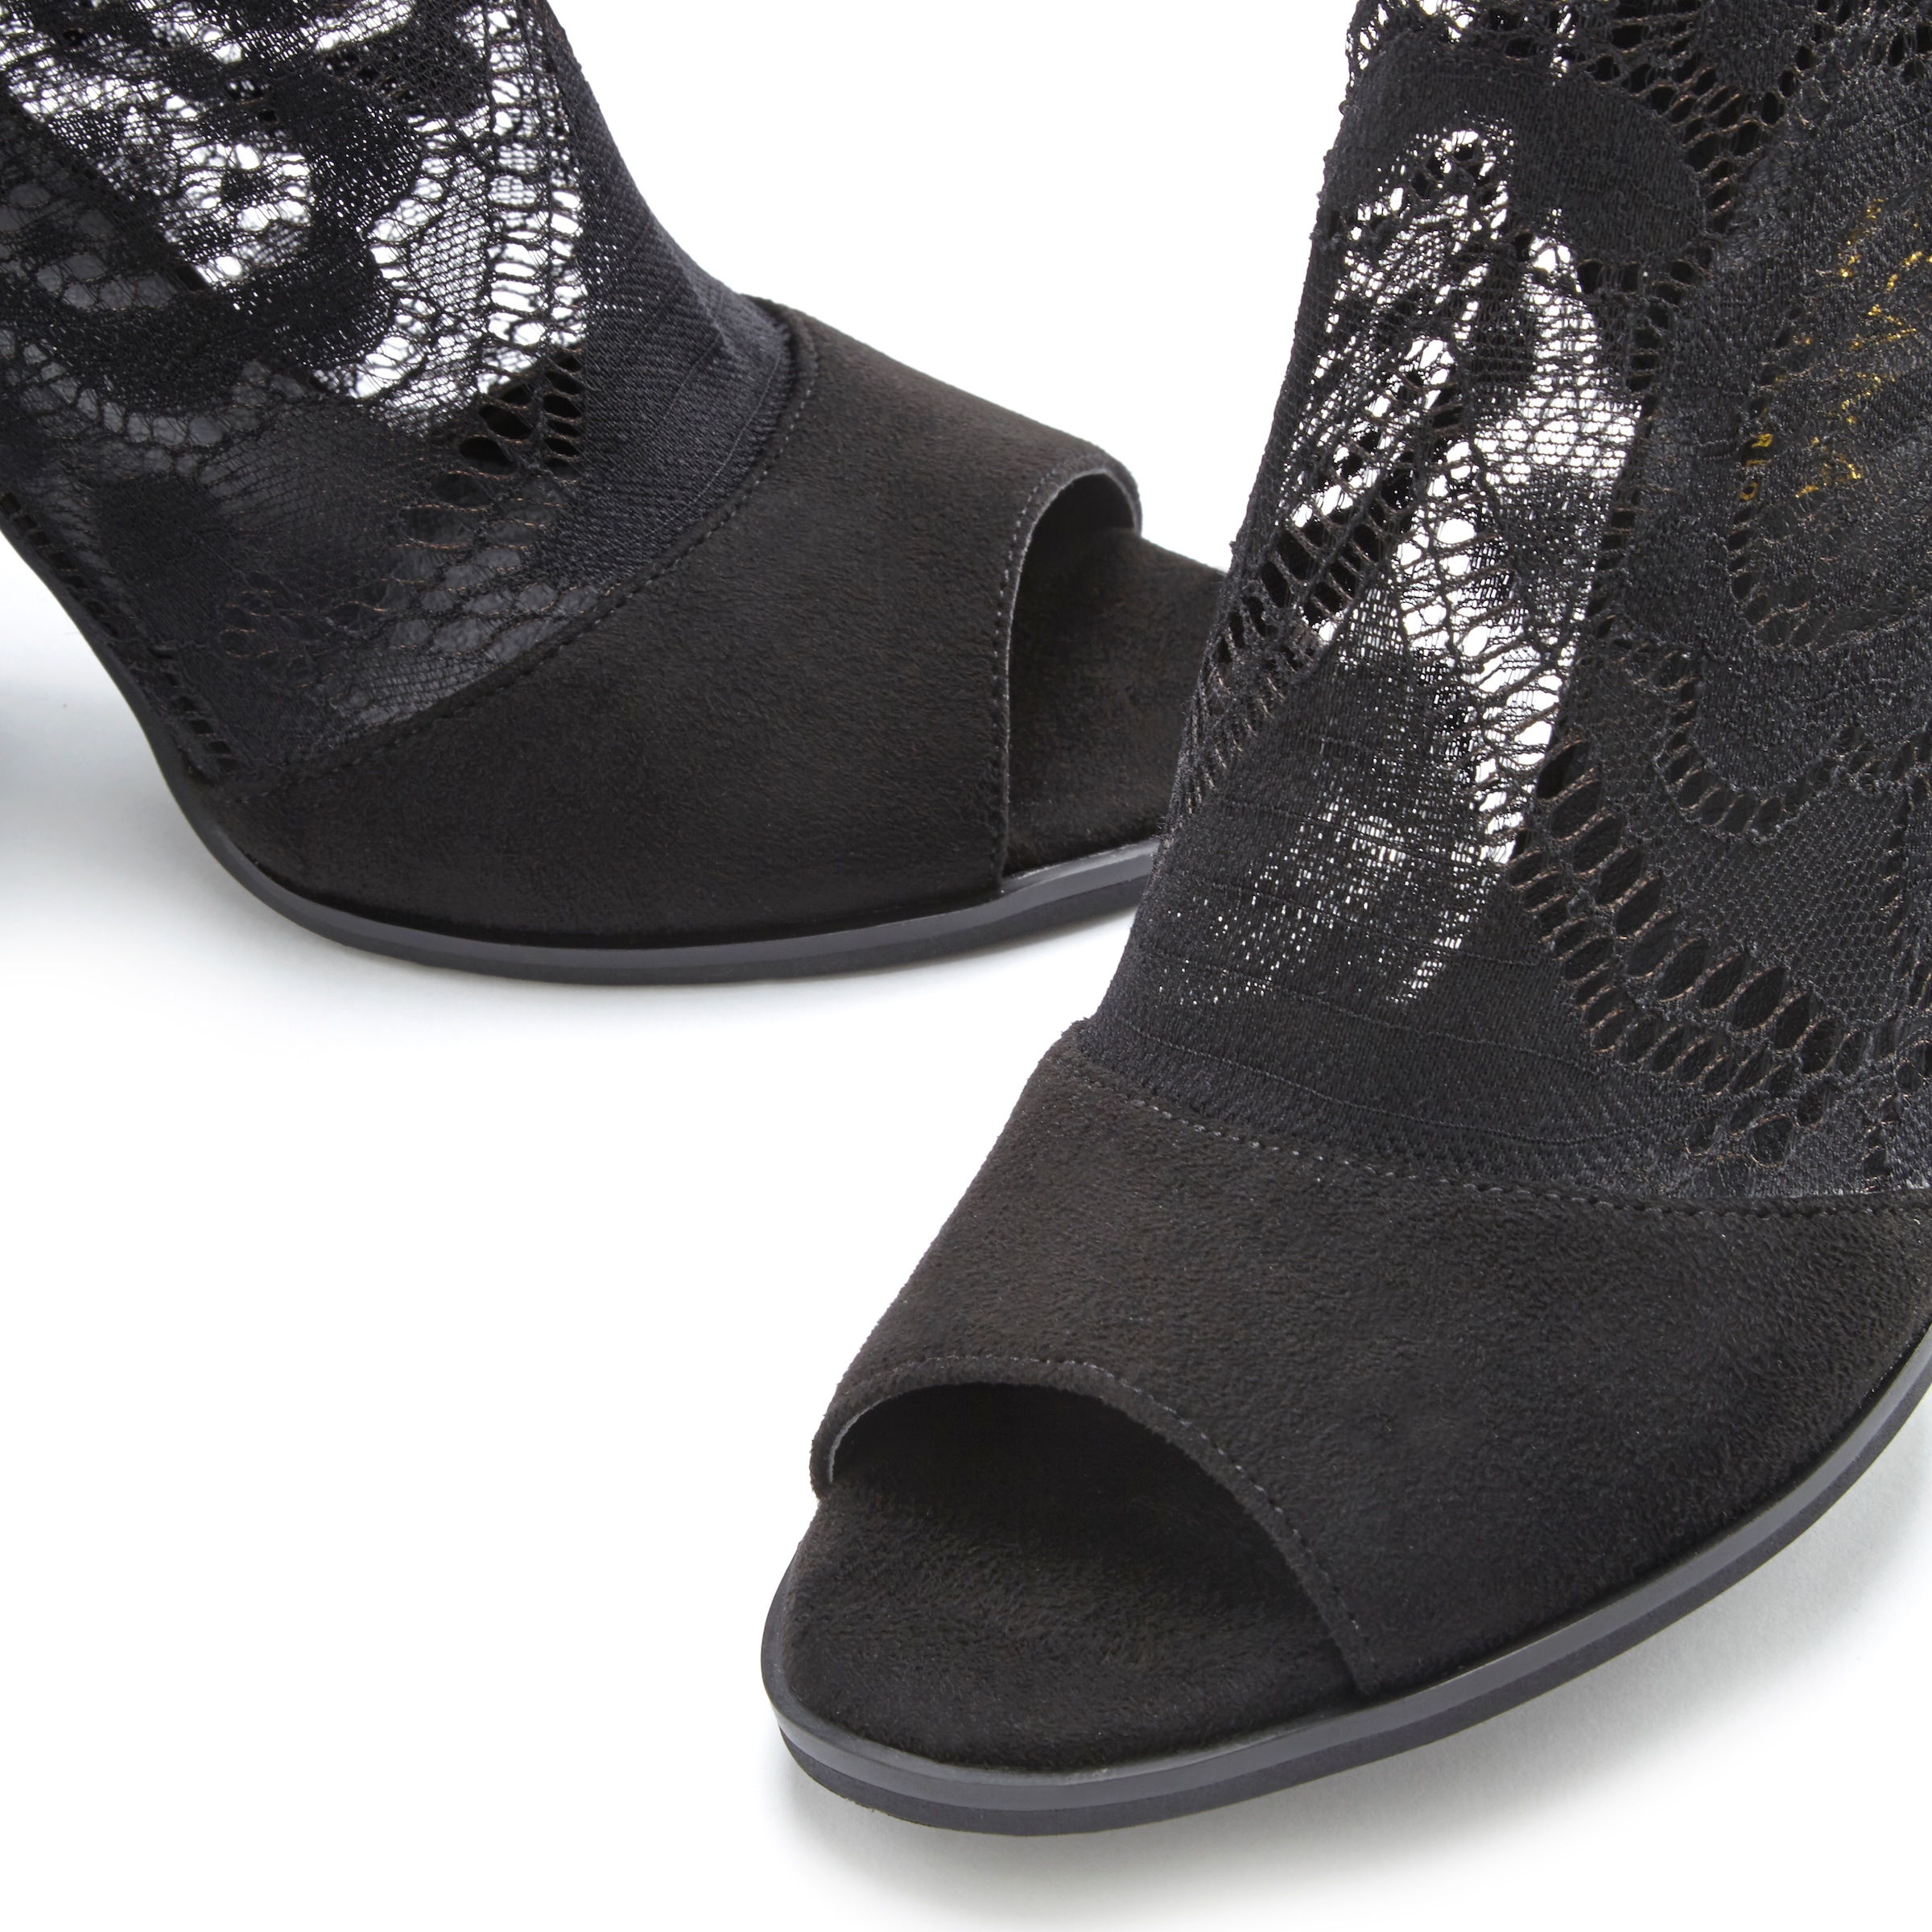 LASCANA Stiefelette, mit elastischer Spitze, modischer Blockabsatz, Sandalette, Ankle Boots